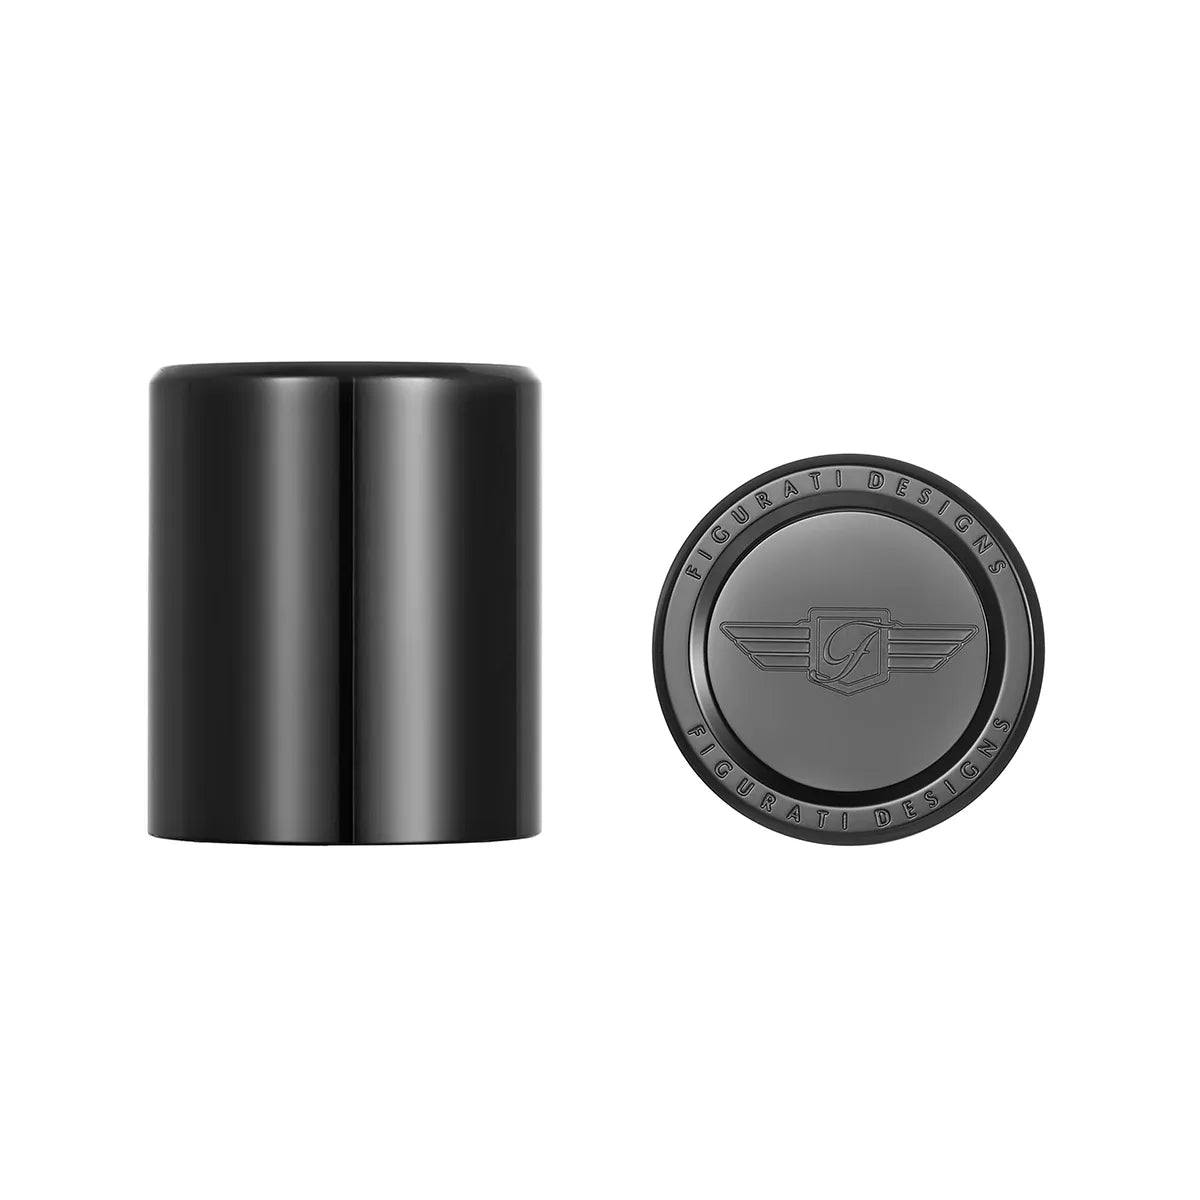 哈雷戴维森黑色 Figurati 设计徽标不锈钢对接硬件